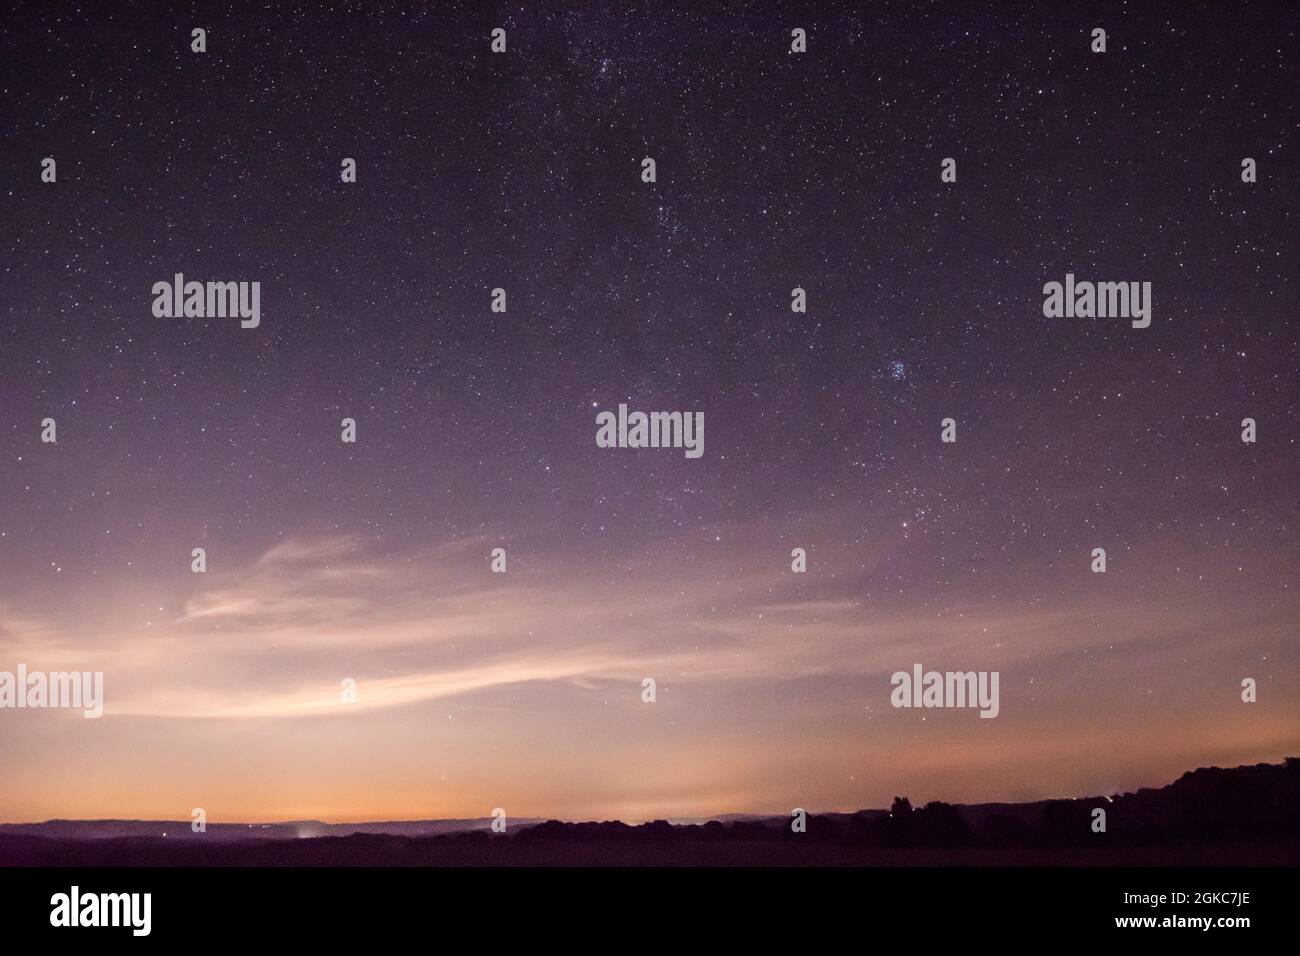 La pollution lumineuse éclaire le ciel nocturne au-dessus de Londres, vu de près de Midhurst, West Sussex, UK, Milky Way et Pleiades dans un ciel étoilé Banque D'Images